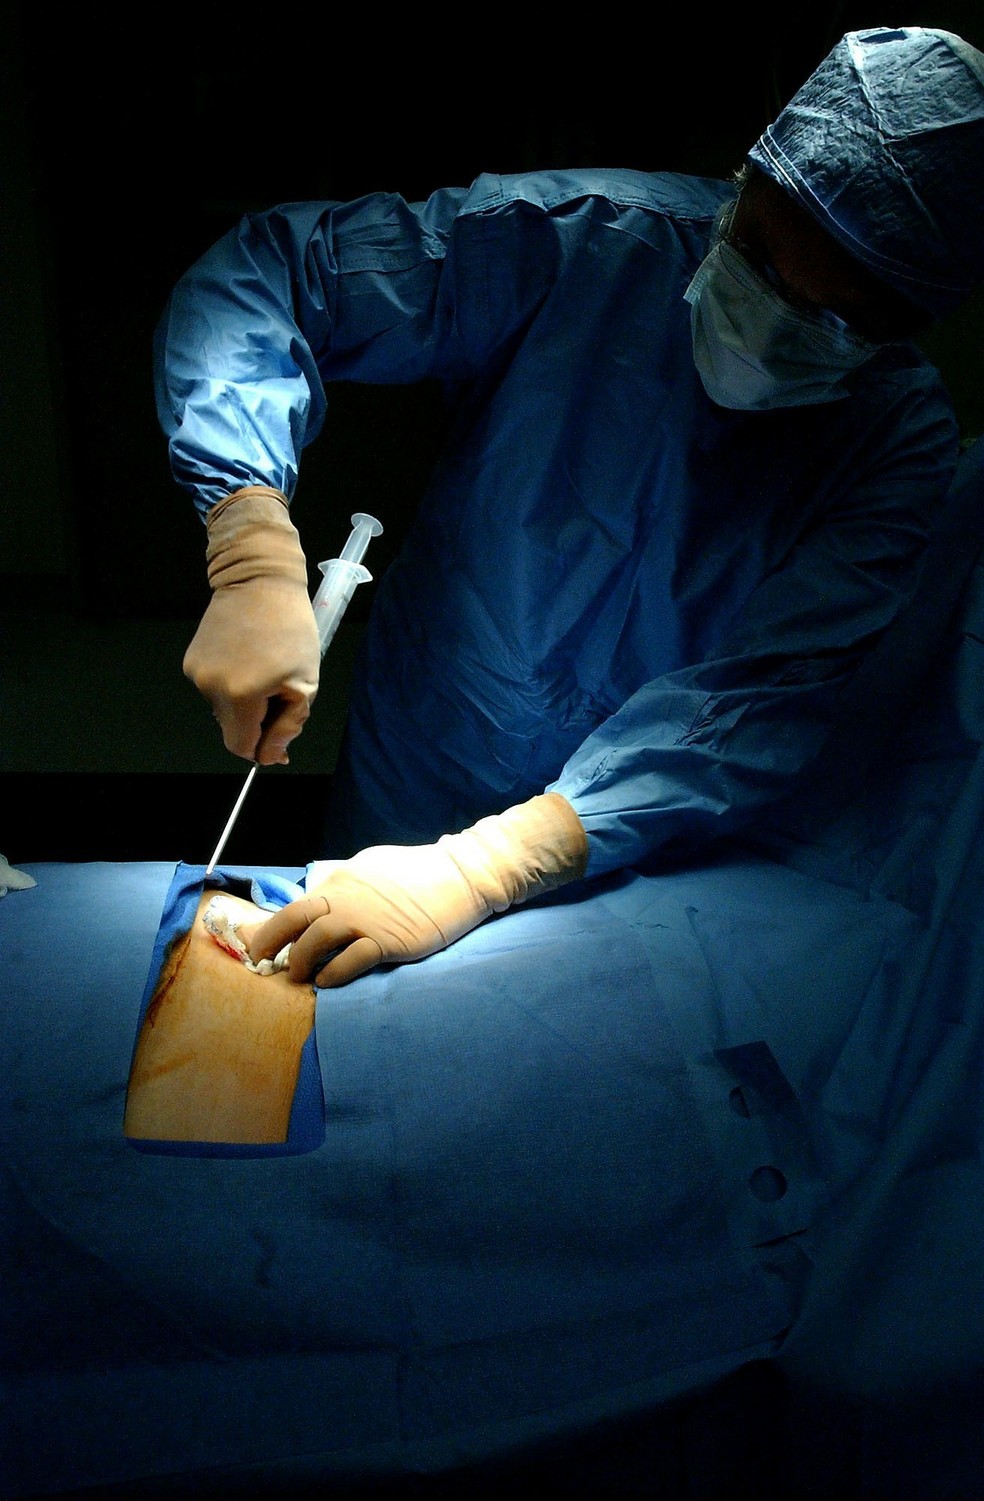 surgery 85574 1920 - Novo material pode substituir transplante de medula óssea, diz estudo